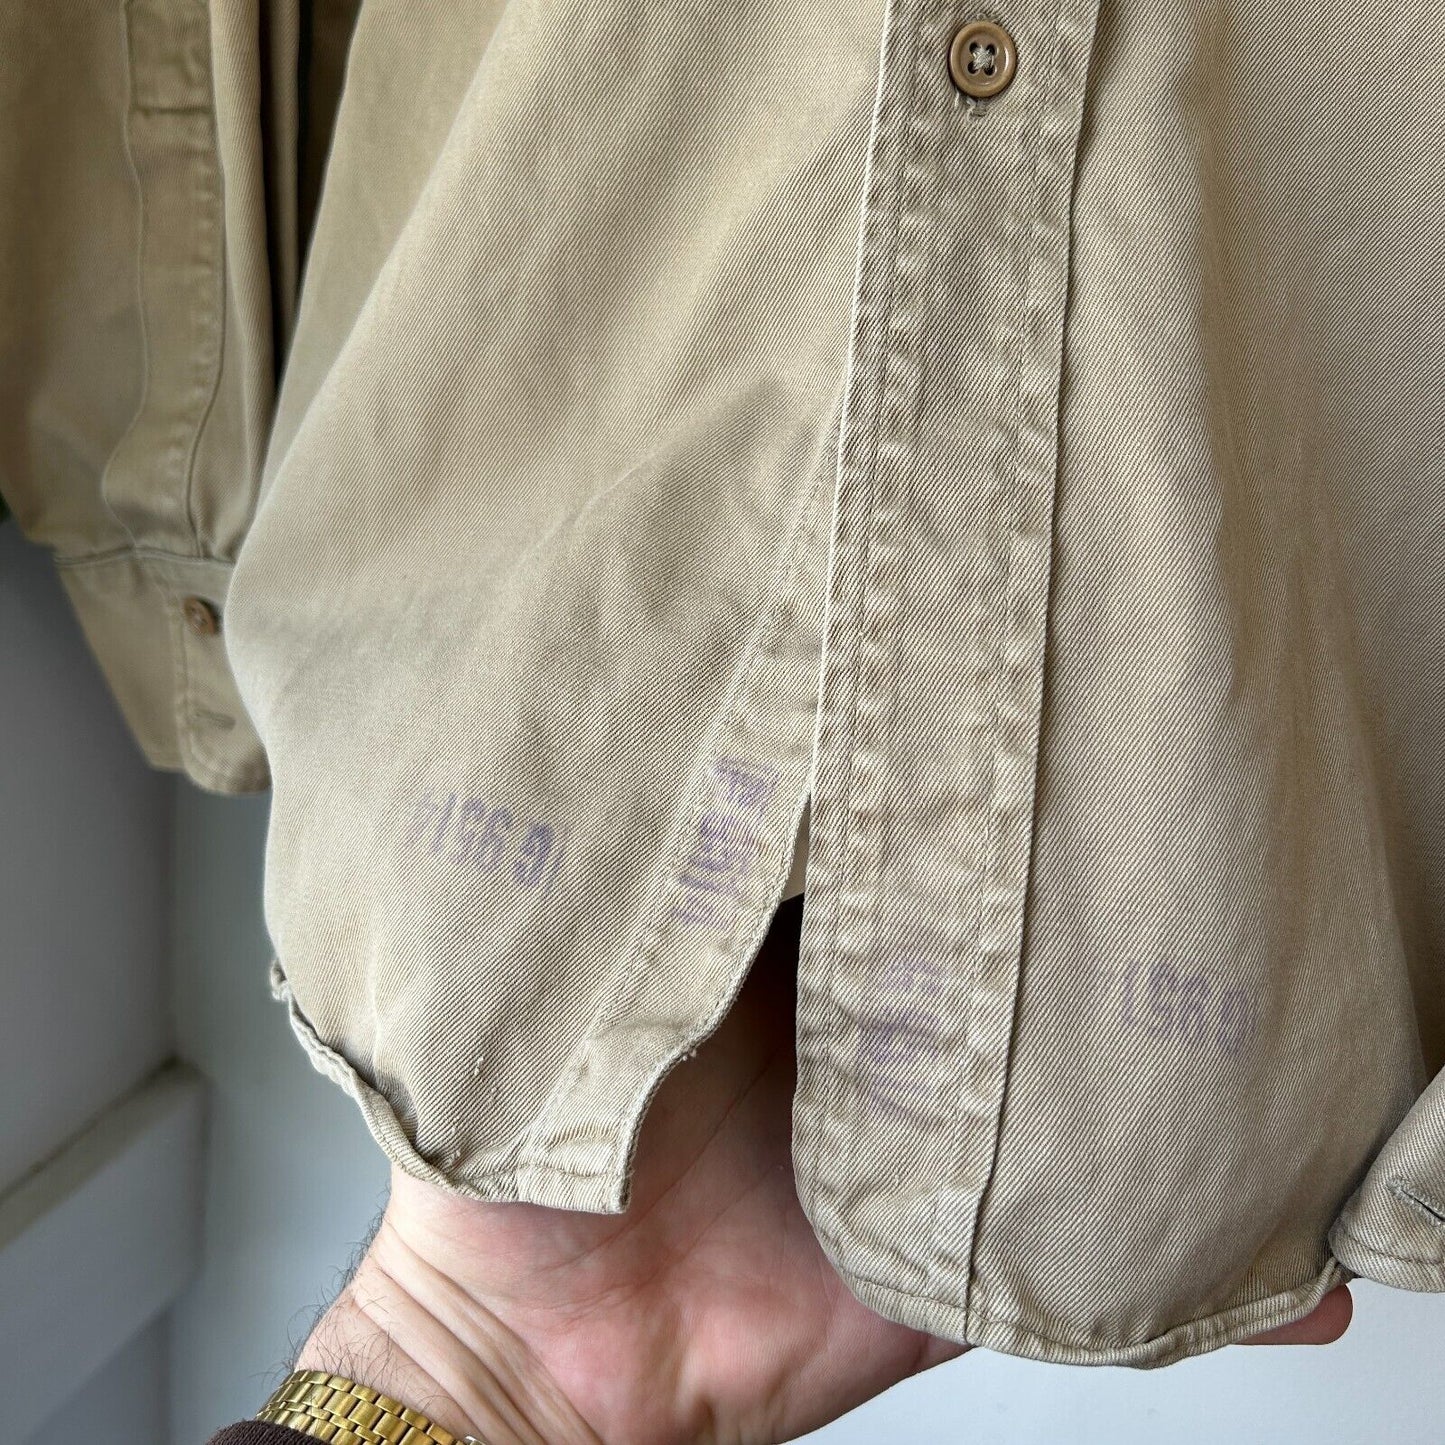 VINTAGE 70s 80s | Military Fatigue Tan Button Down Shirt sz L Adult